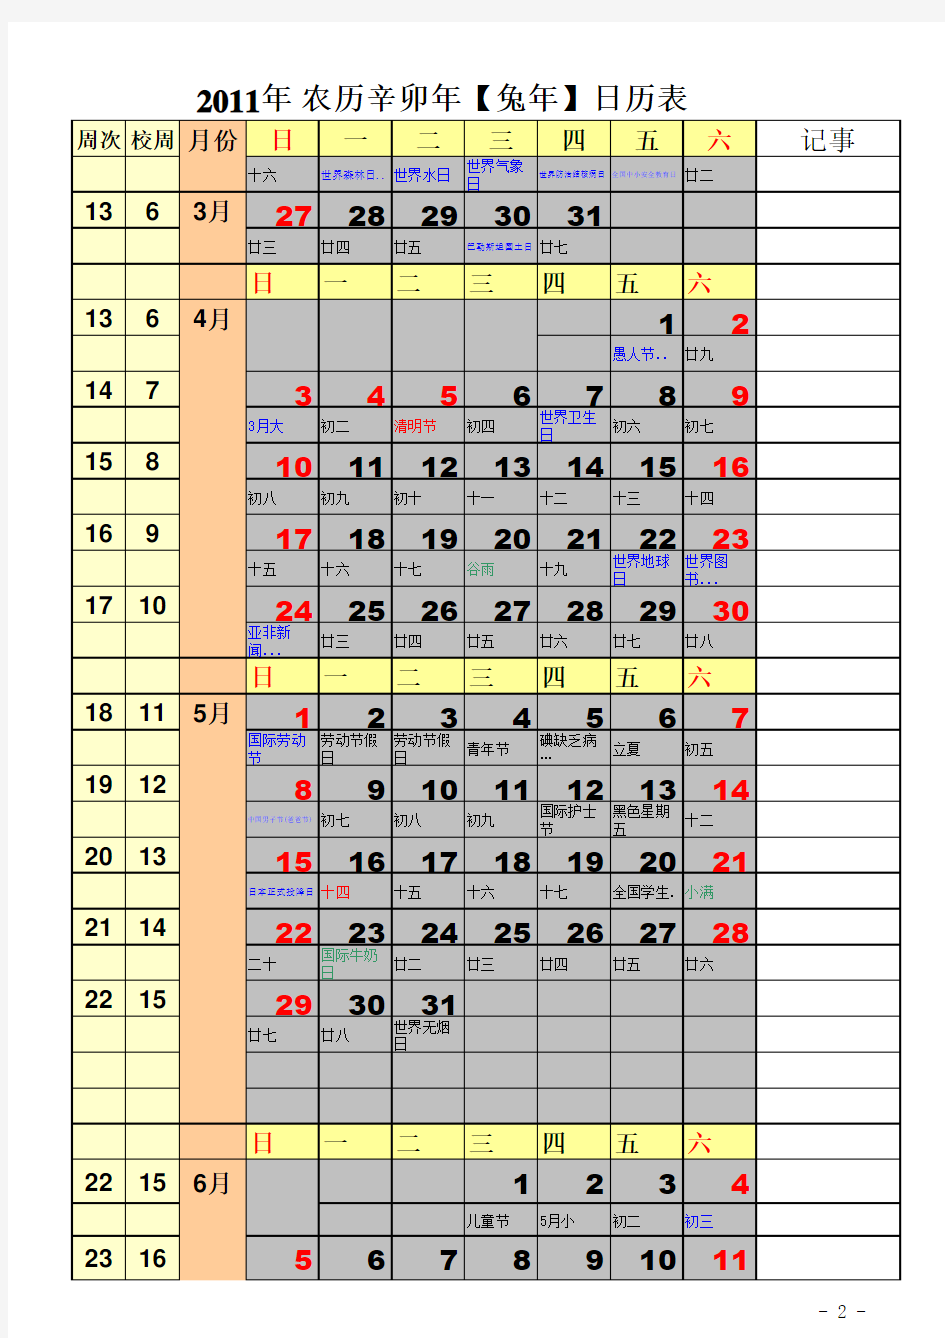 2011年全年日历表(校历)